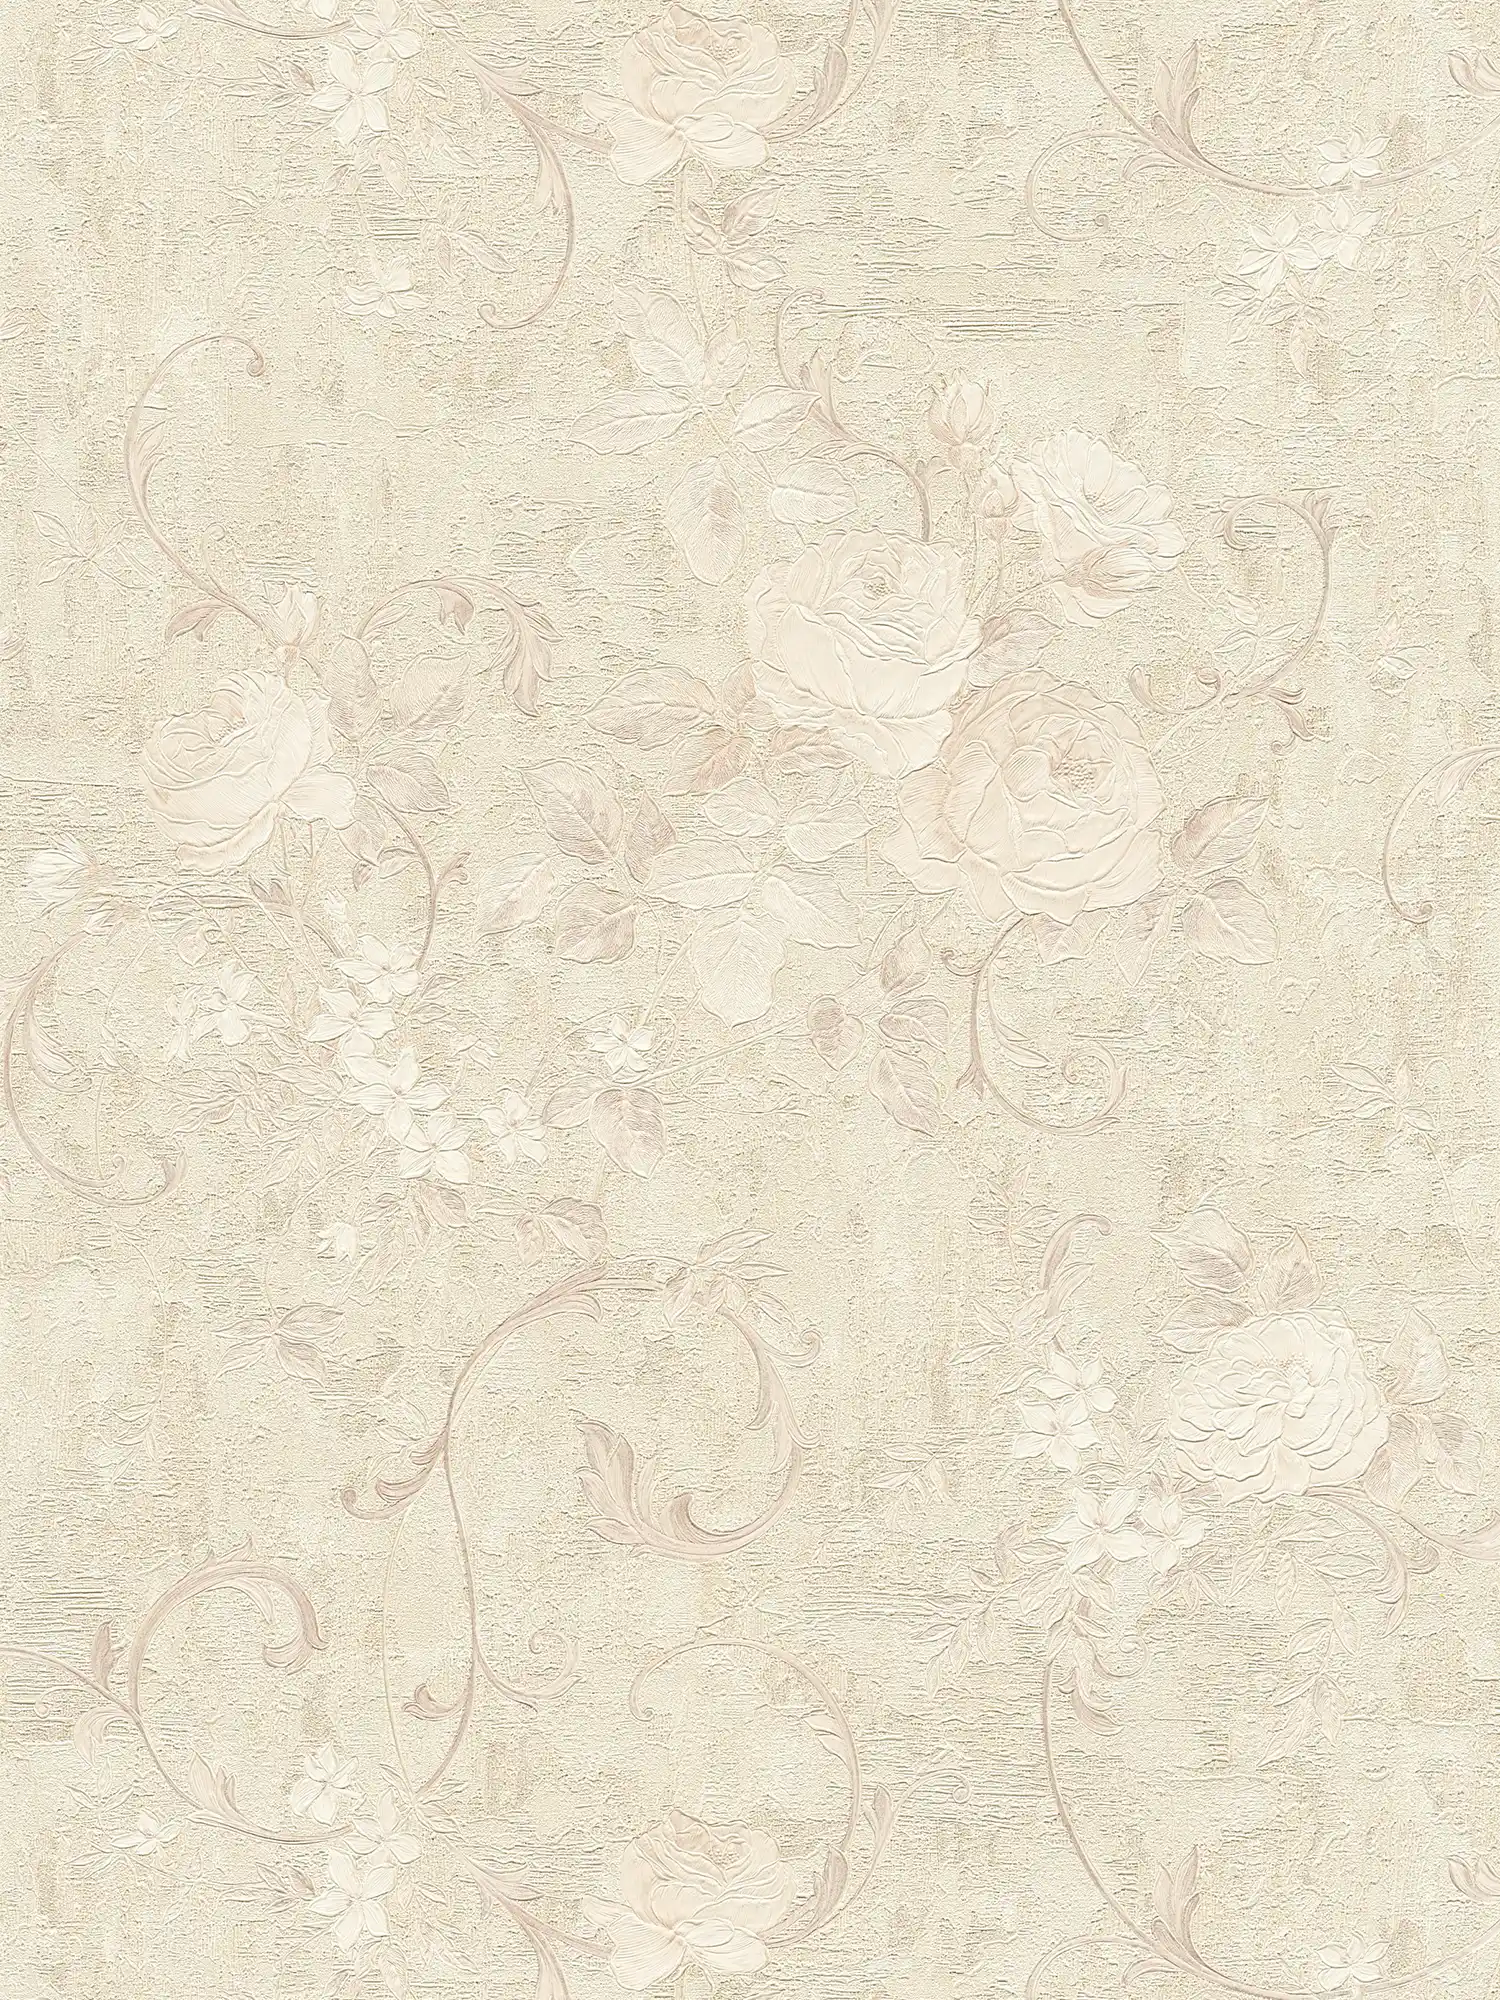 Papier peint motifs de roses & feuillages - beige, crème, gris
